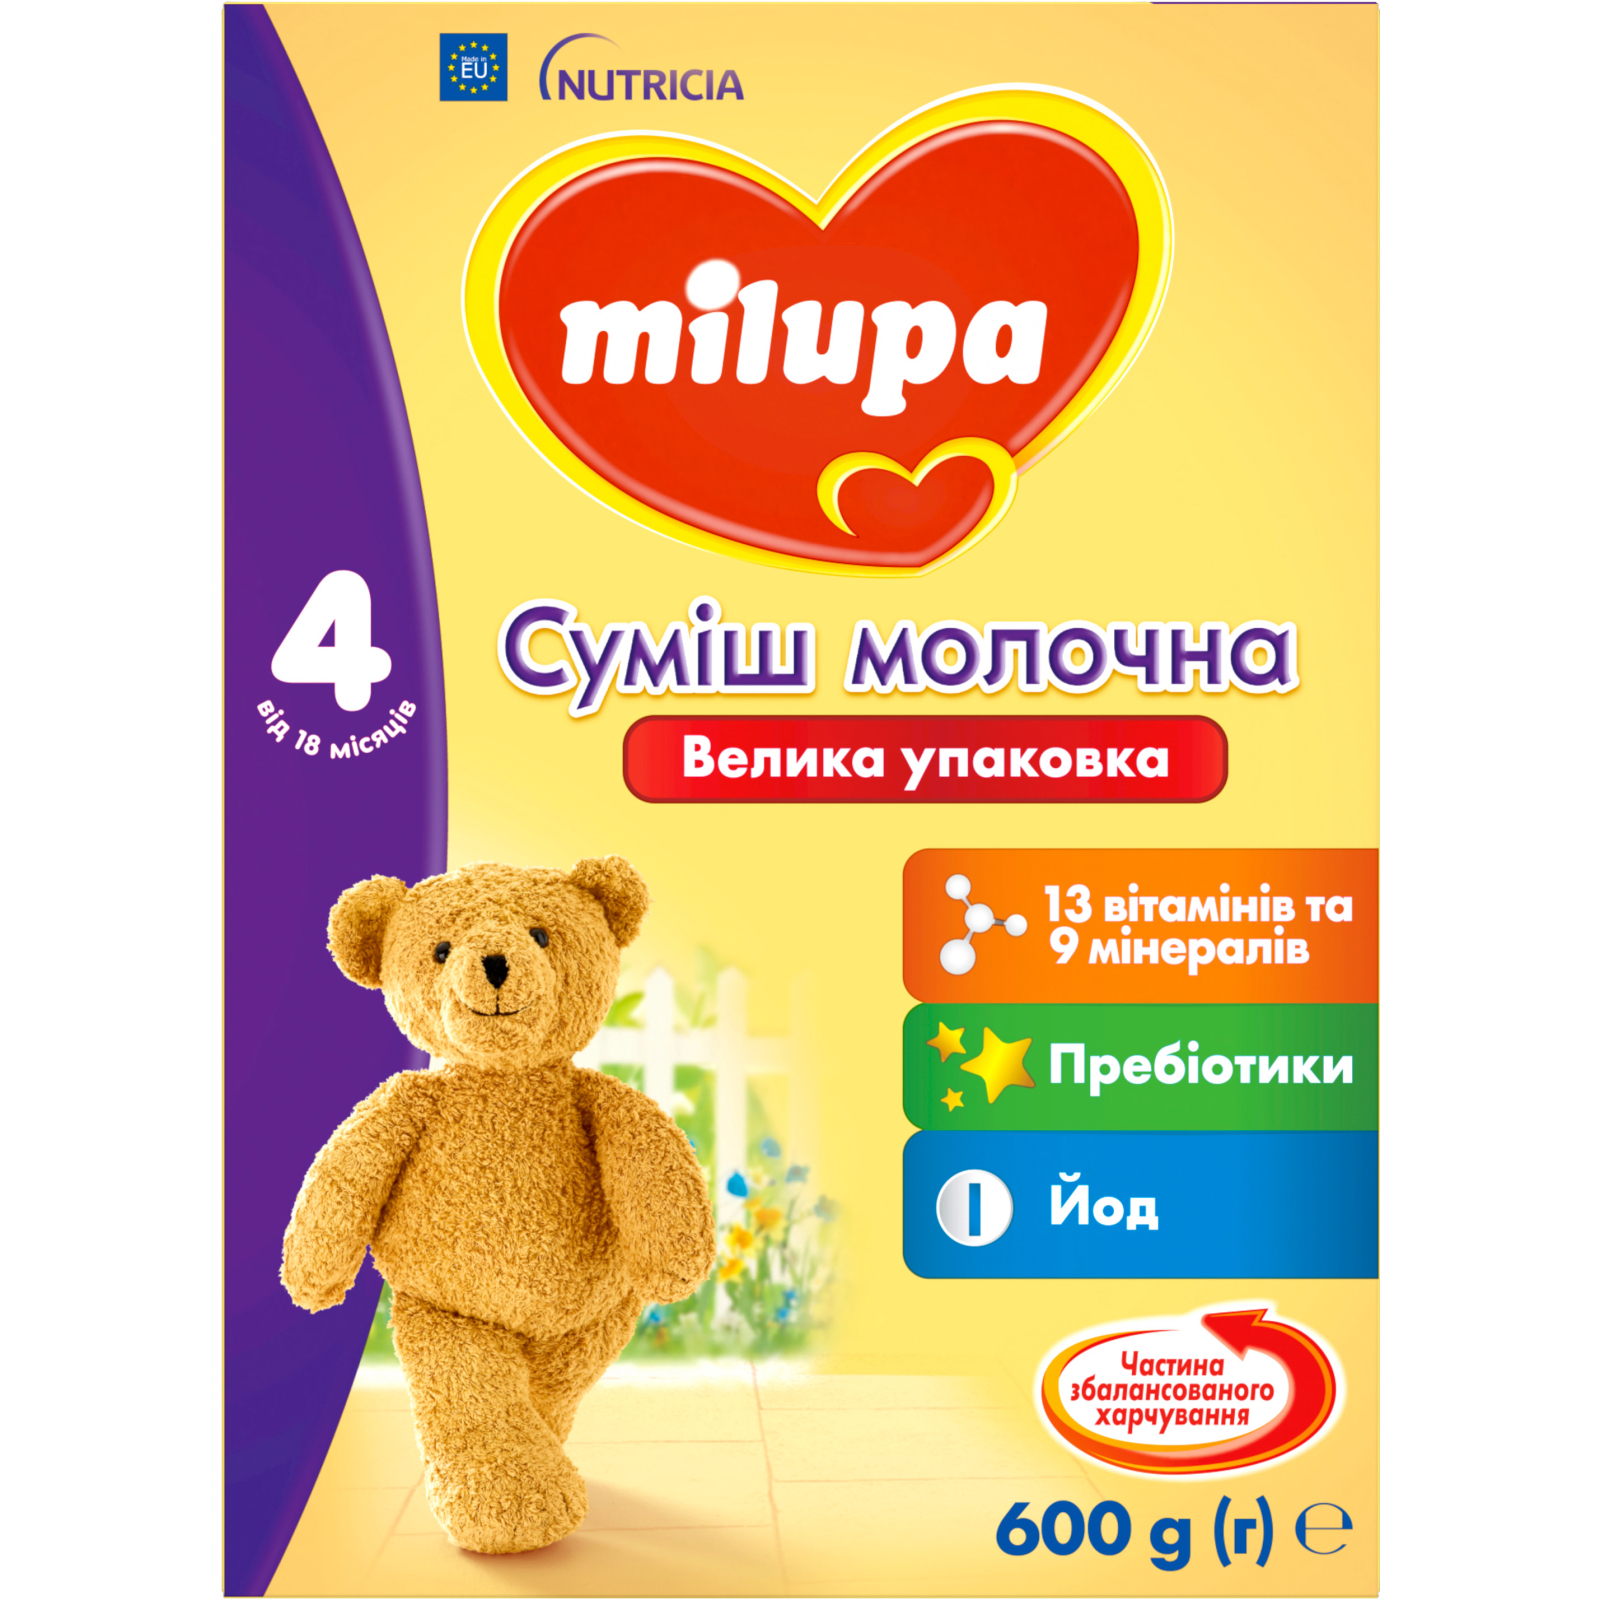 Дитяча суміш Milupa 4 молочна 600 гр (5900852940811)